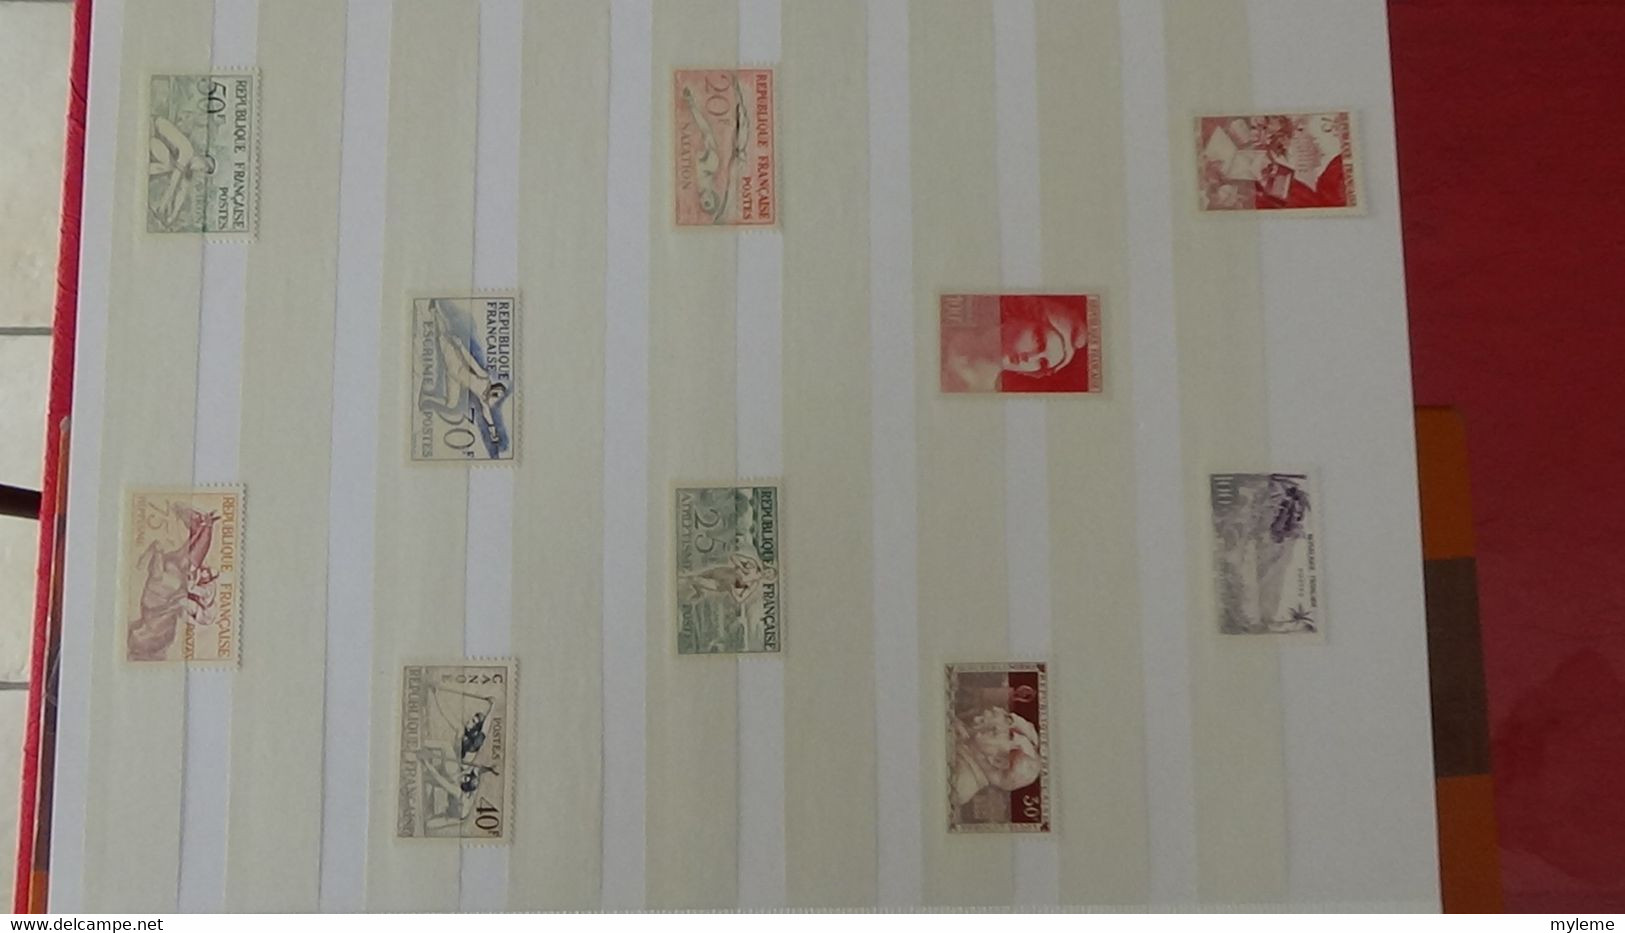 M23 Collection de timbres ** années 40 à 60 dont bonnes petites valeurs. Côte très sympa !!!